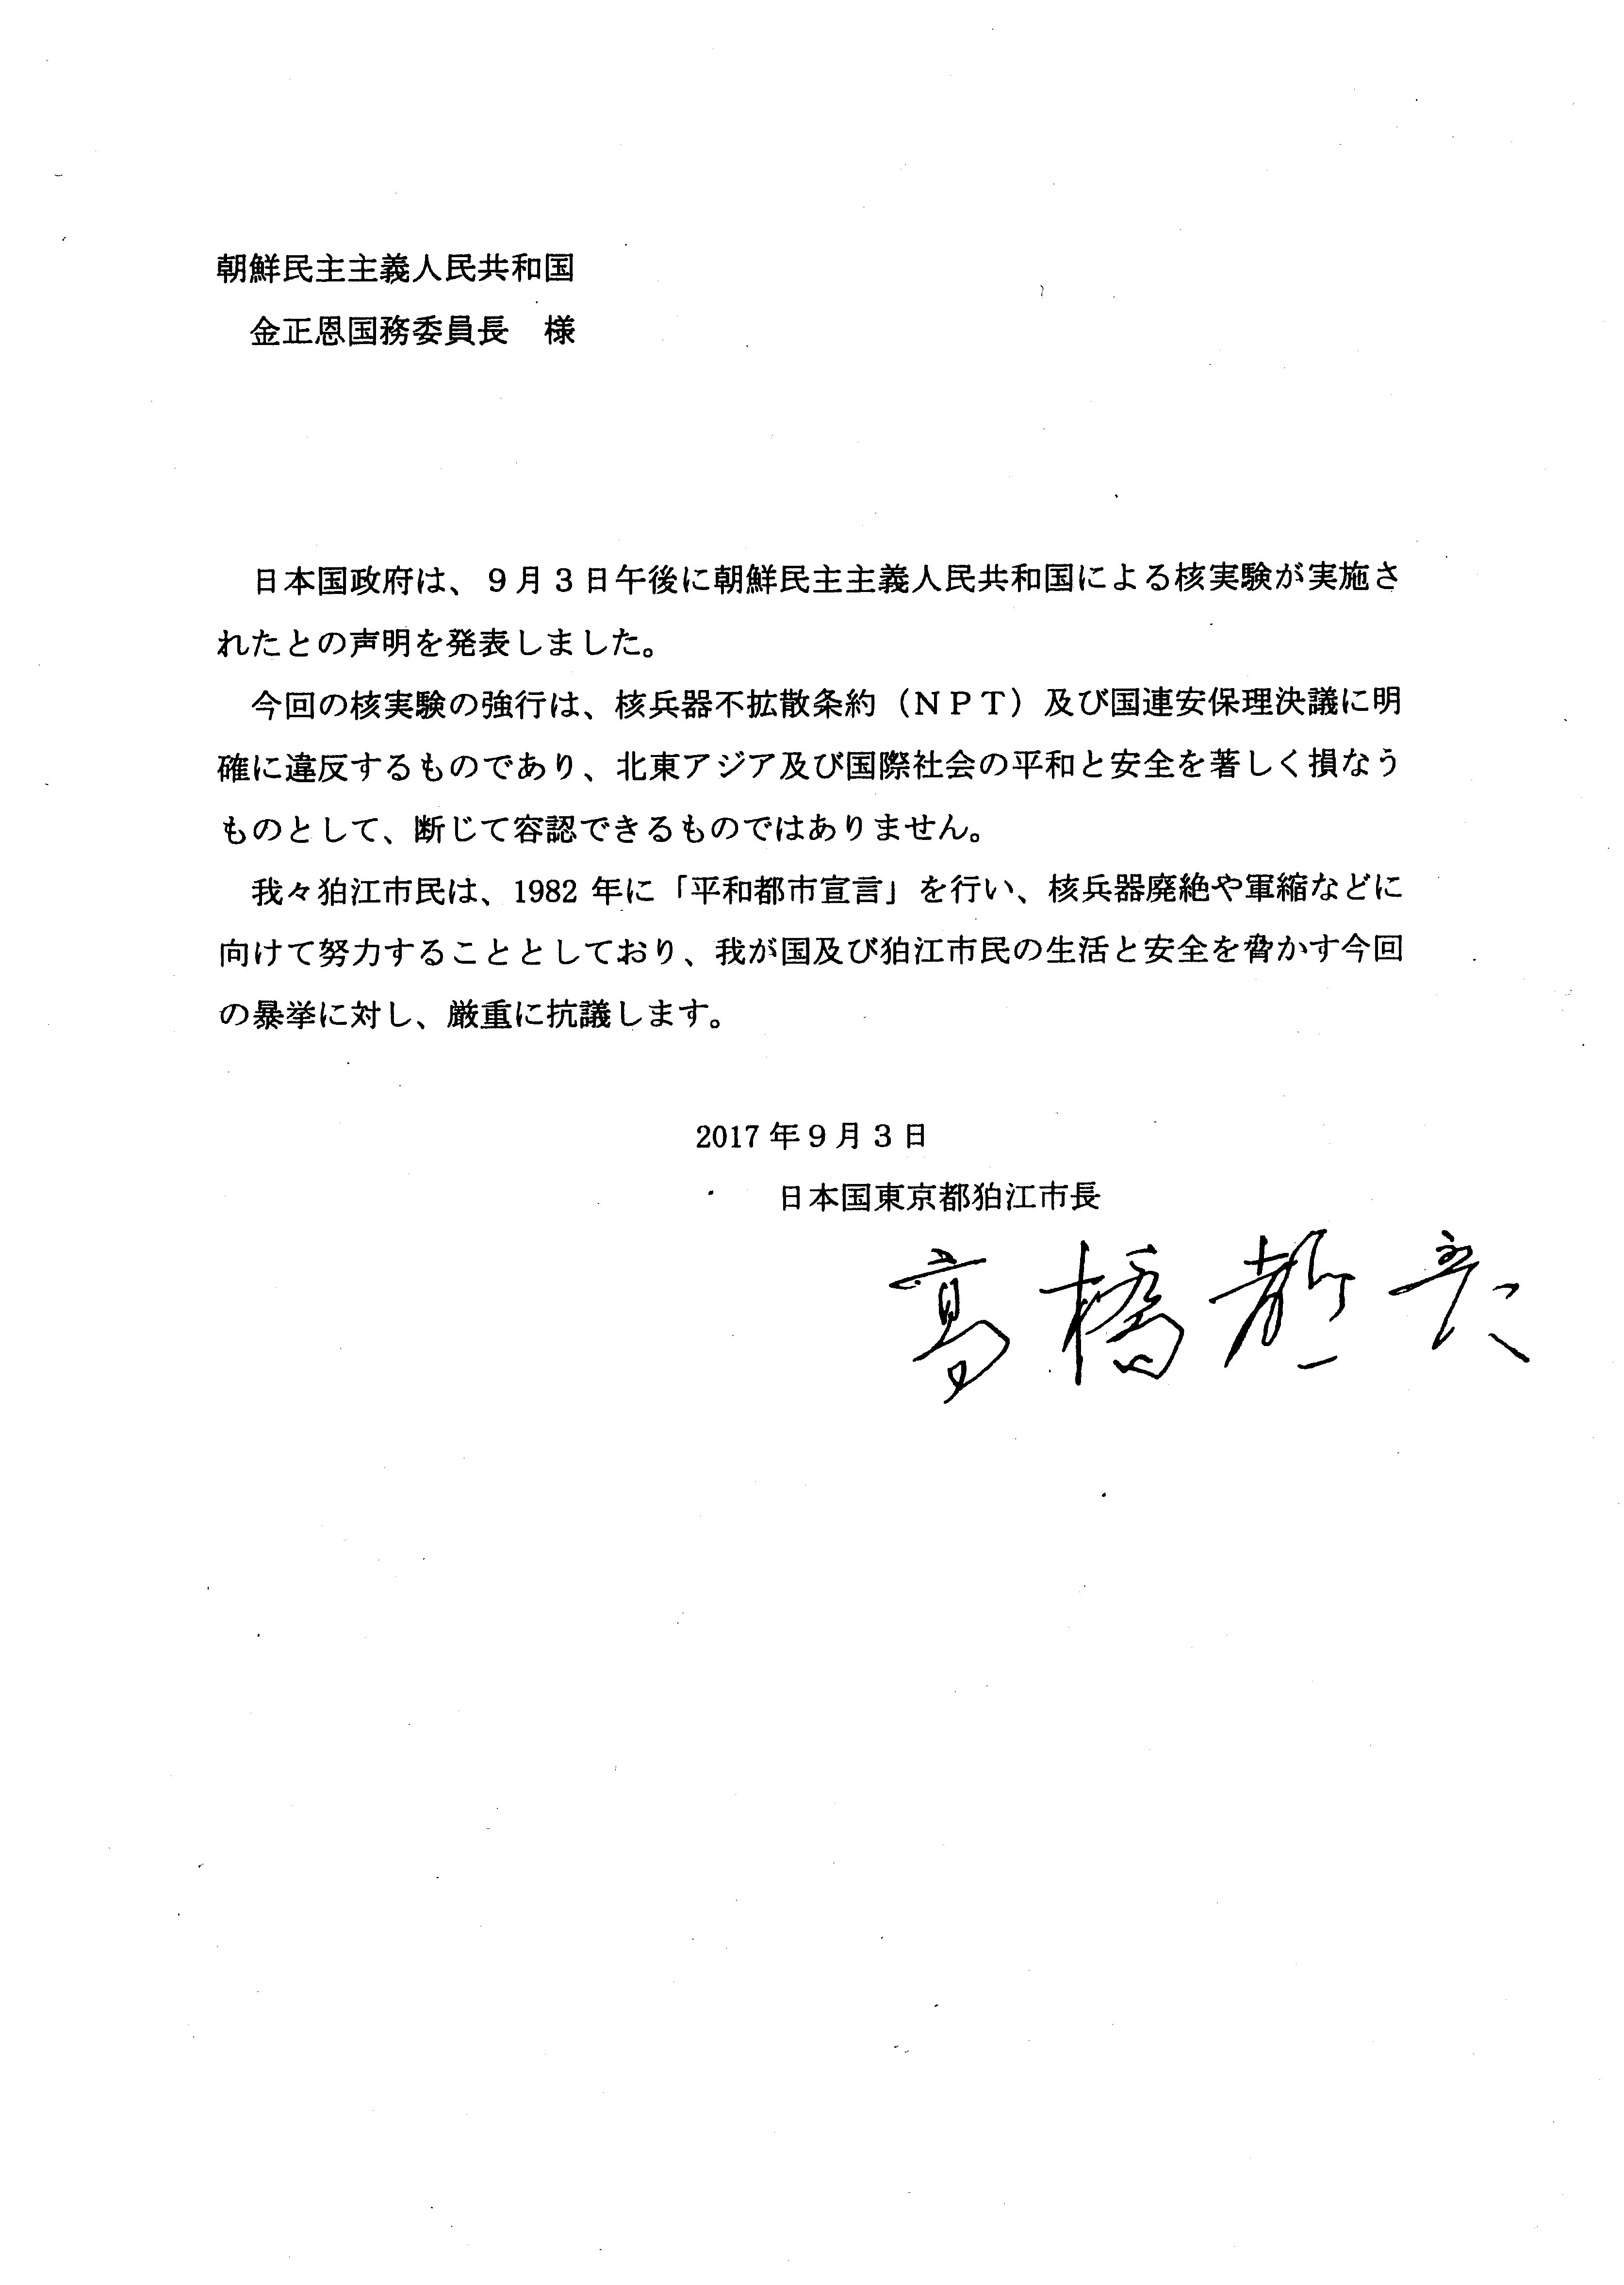 朝鮮民主主義人民共和国（北朝鮮）の核実験に対して抗議文を送付しました - 狛江市役所